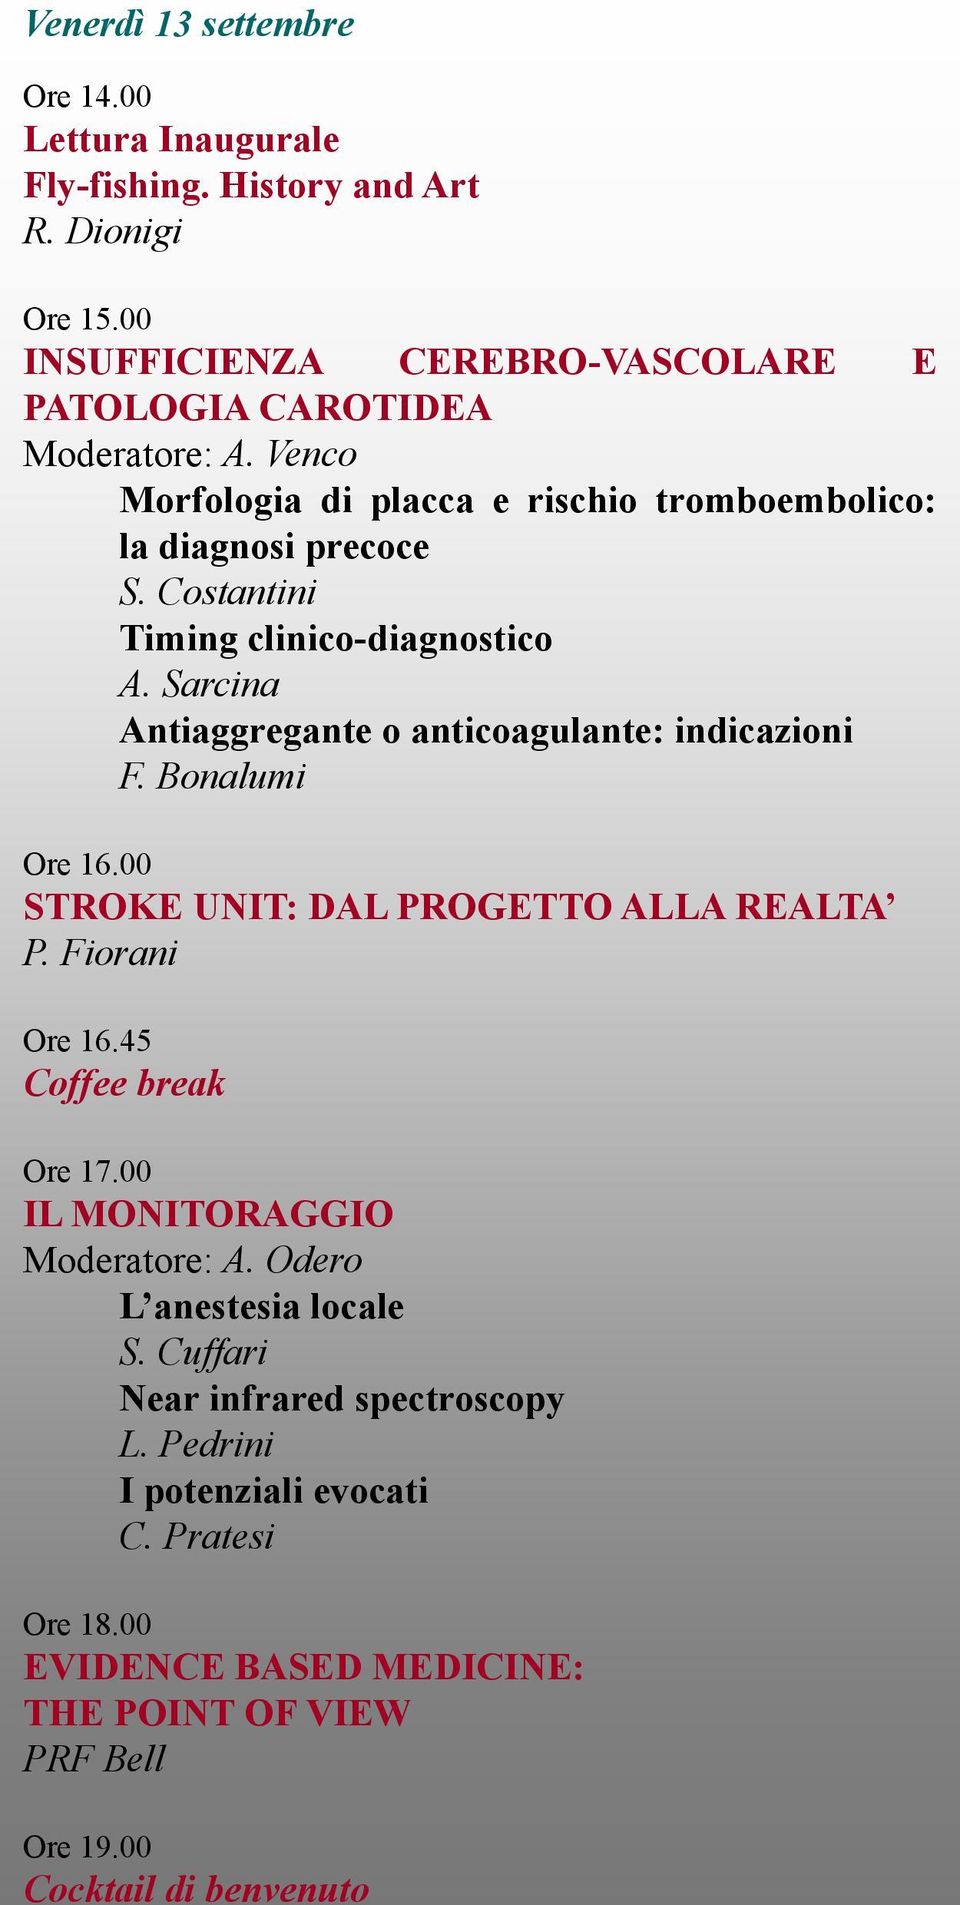 Sarcina Antiaggregante o anticoagulante: indicazioni F. Bonalumi Ore 16.00 STROKE UNIT: DAL PROGETTO ALLA REALTA P. Fiorani Ore 16.45 Coffee break Ore 17.